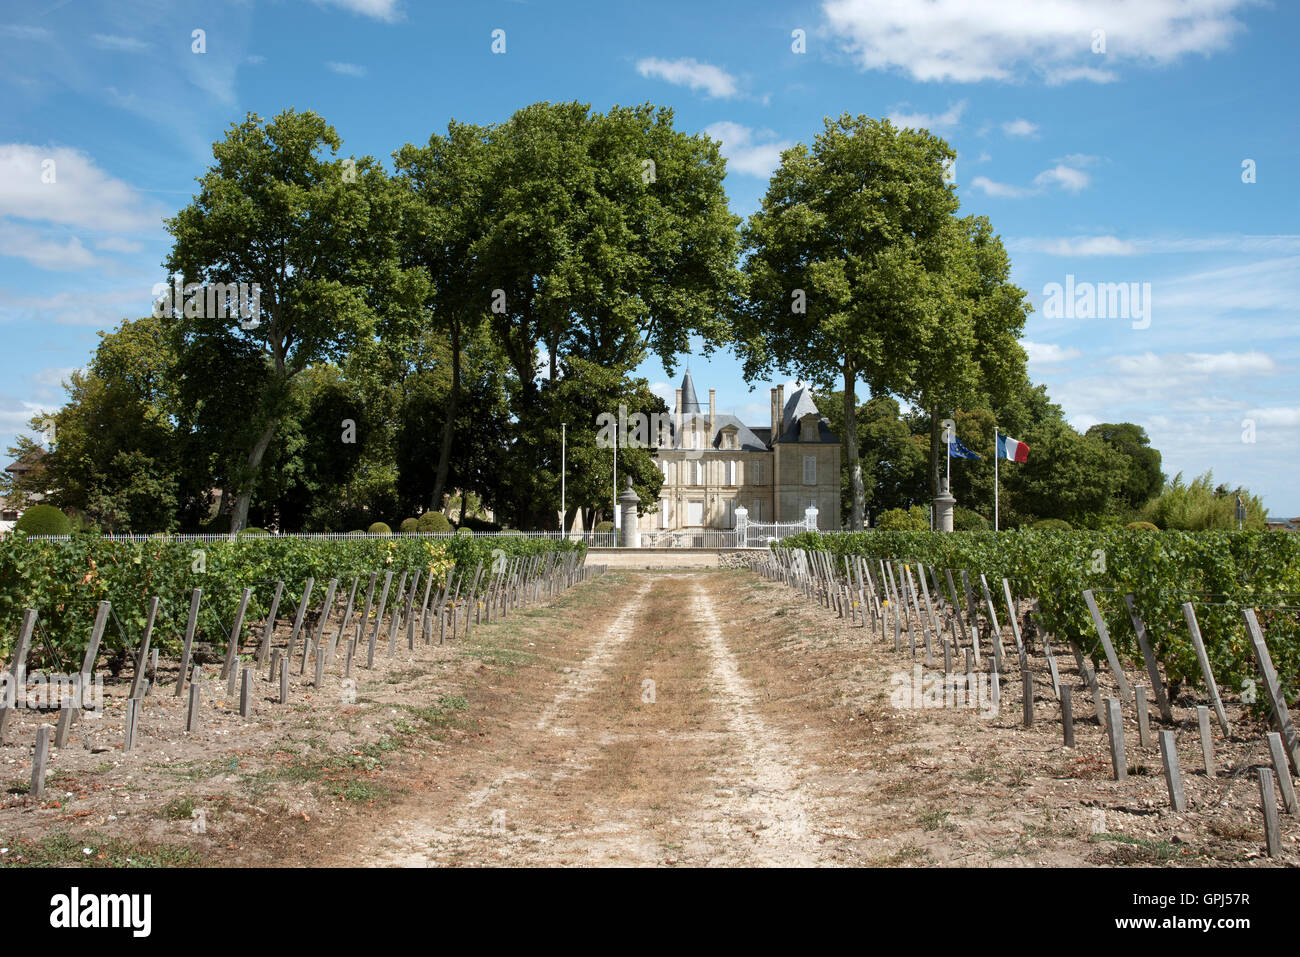 Pauillac Bordeaux France - The historic Chateau Pichon Longueville Comtesse De Lalande situated along the wine route of Pauillac Stock Photo